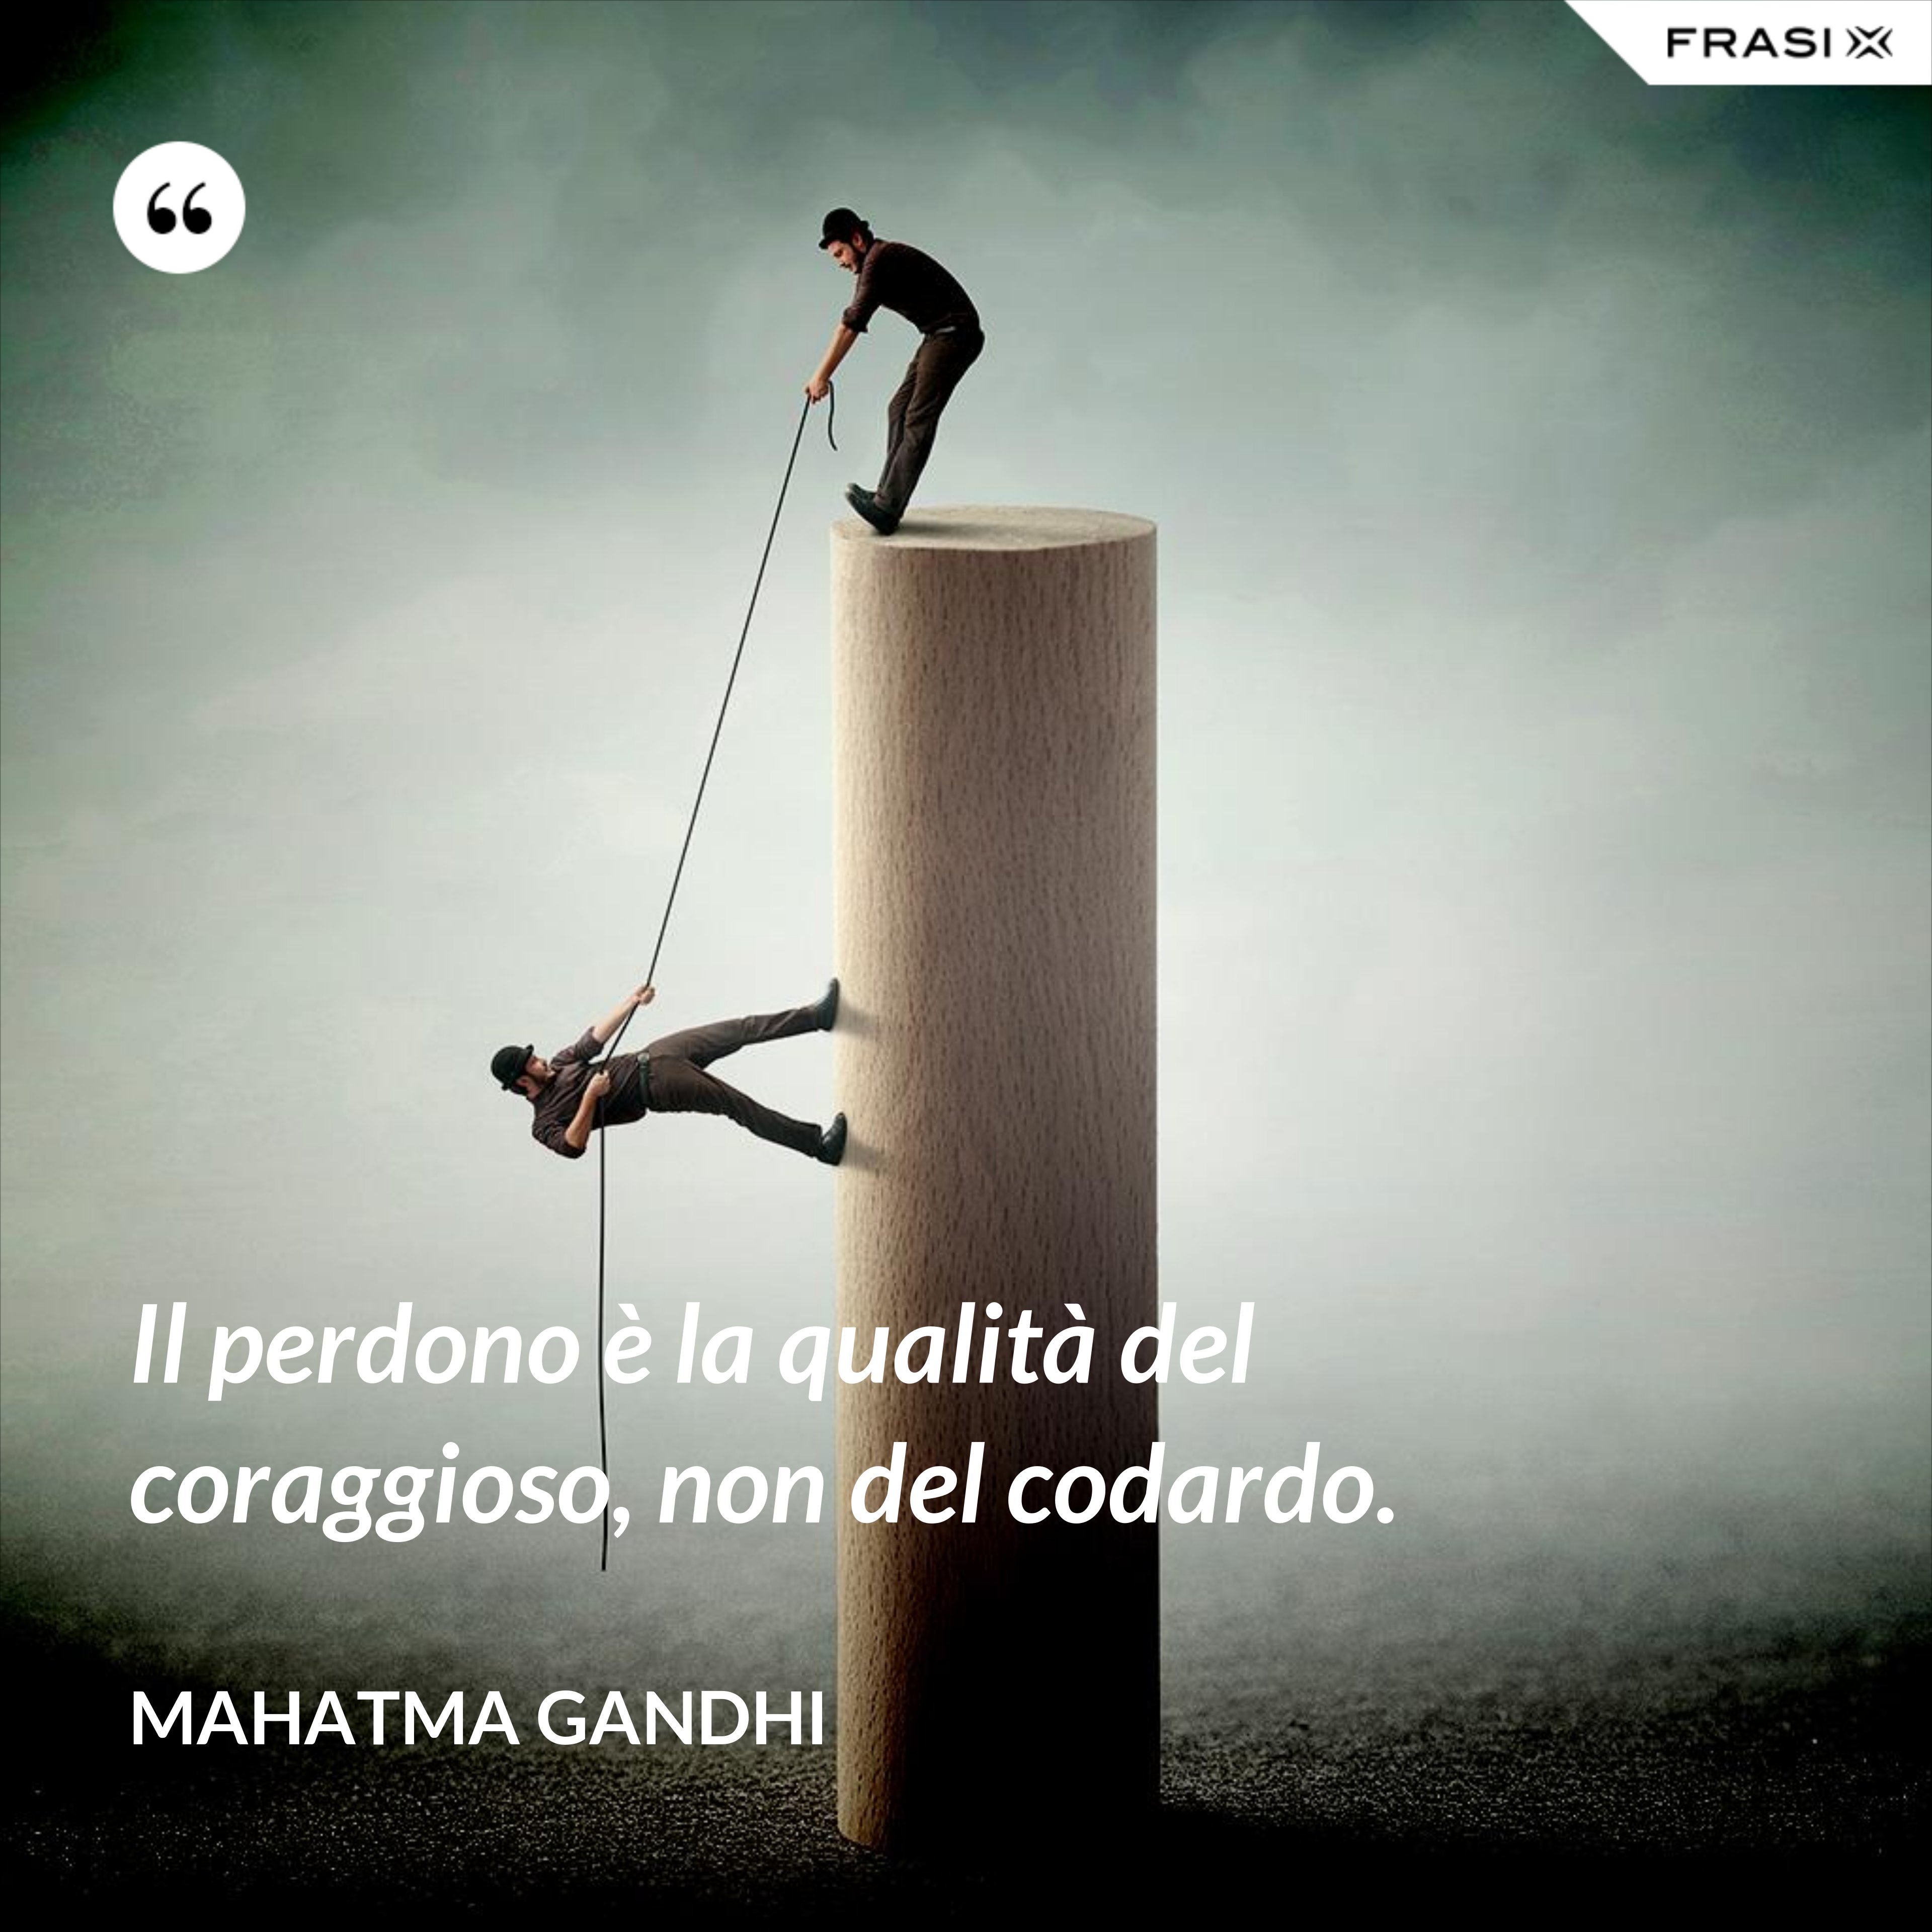 Il perdono è la qualità del coraggioso, non del codardo. - Mahatma Gandhi